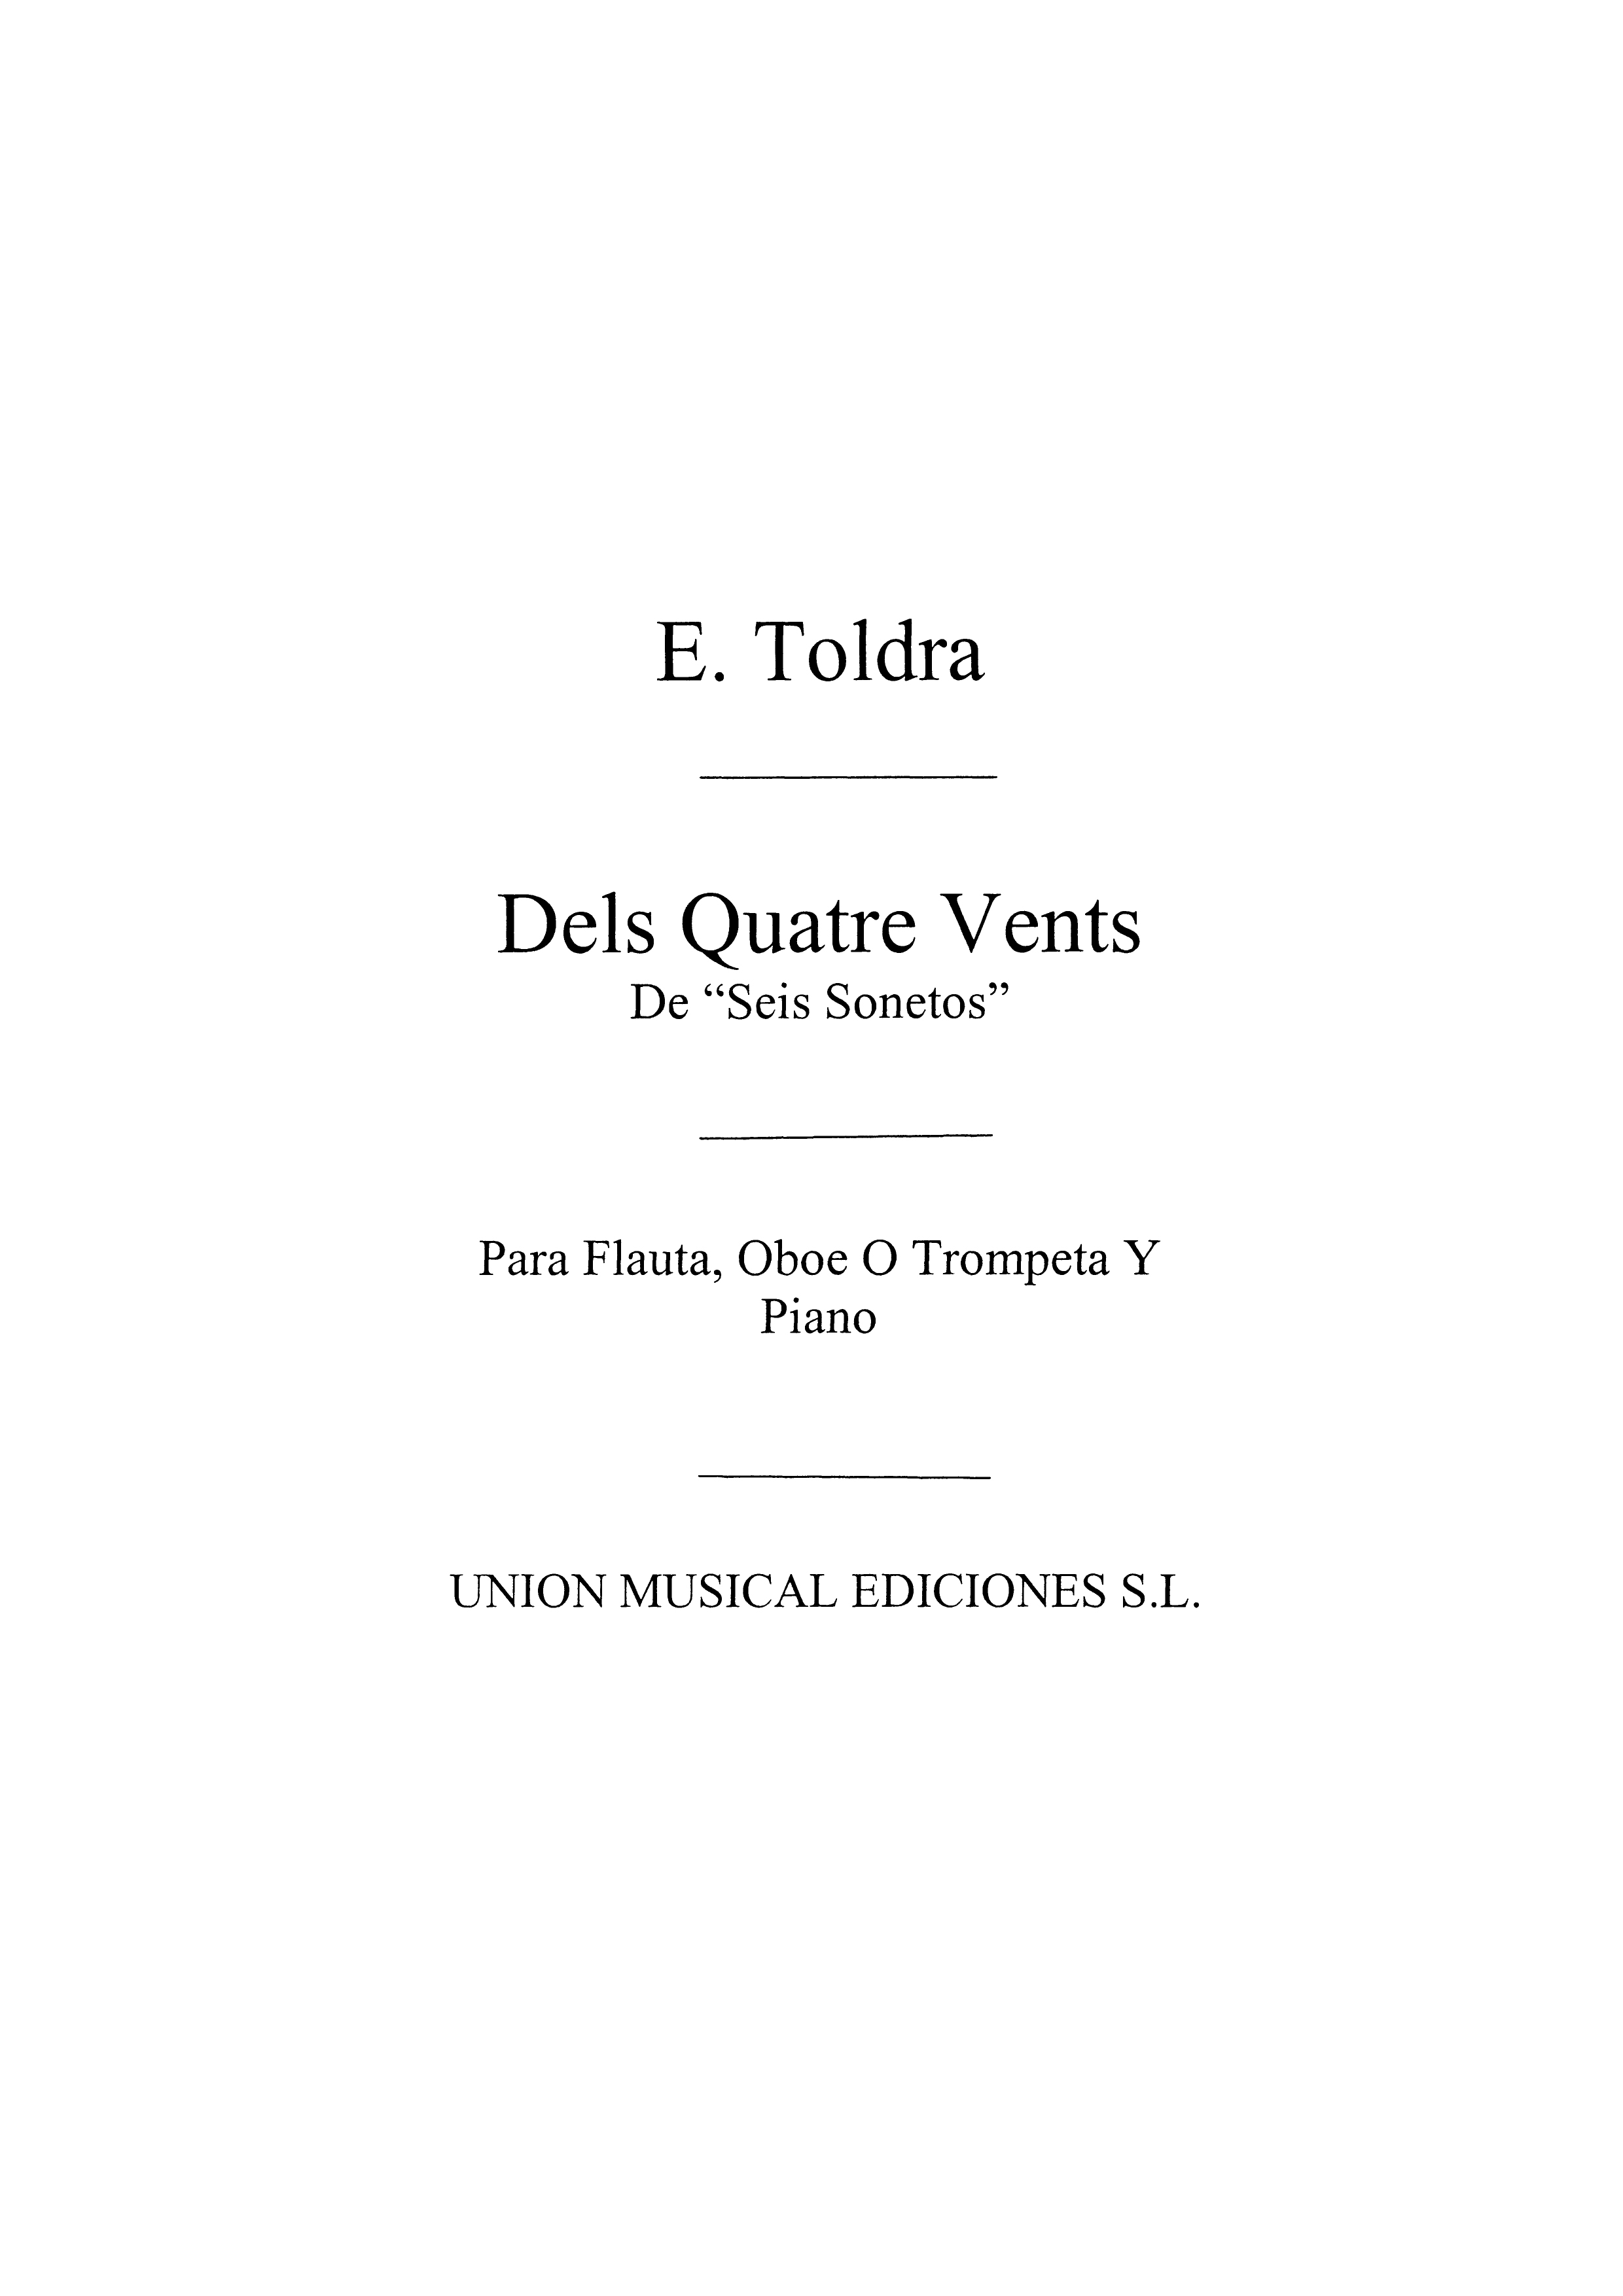 Toldra: Dels Quatre Vents (Amaz) for Trumpet In C and Piano